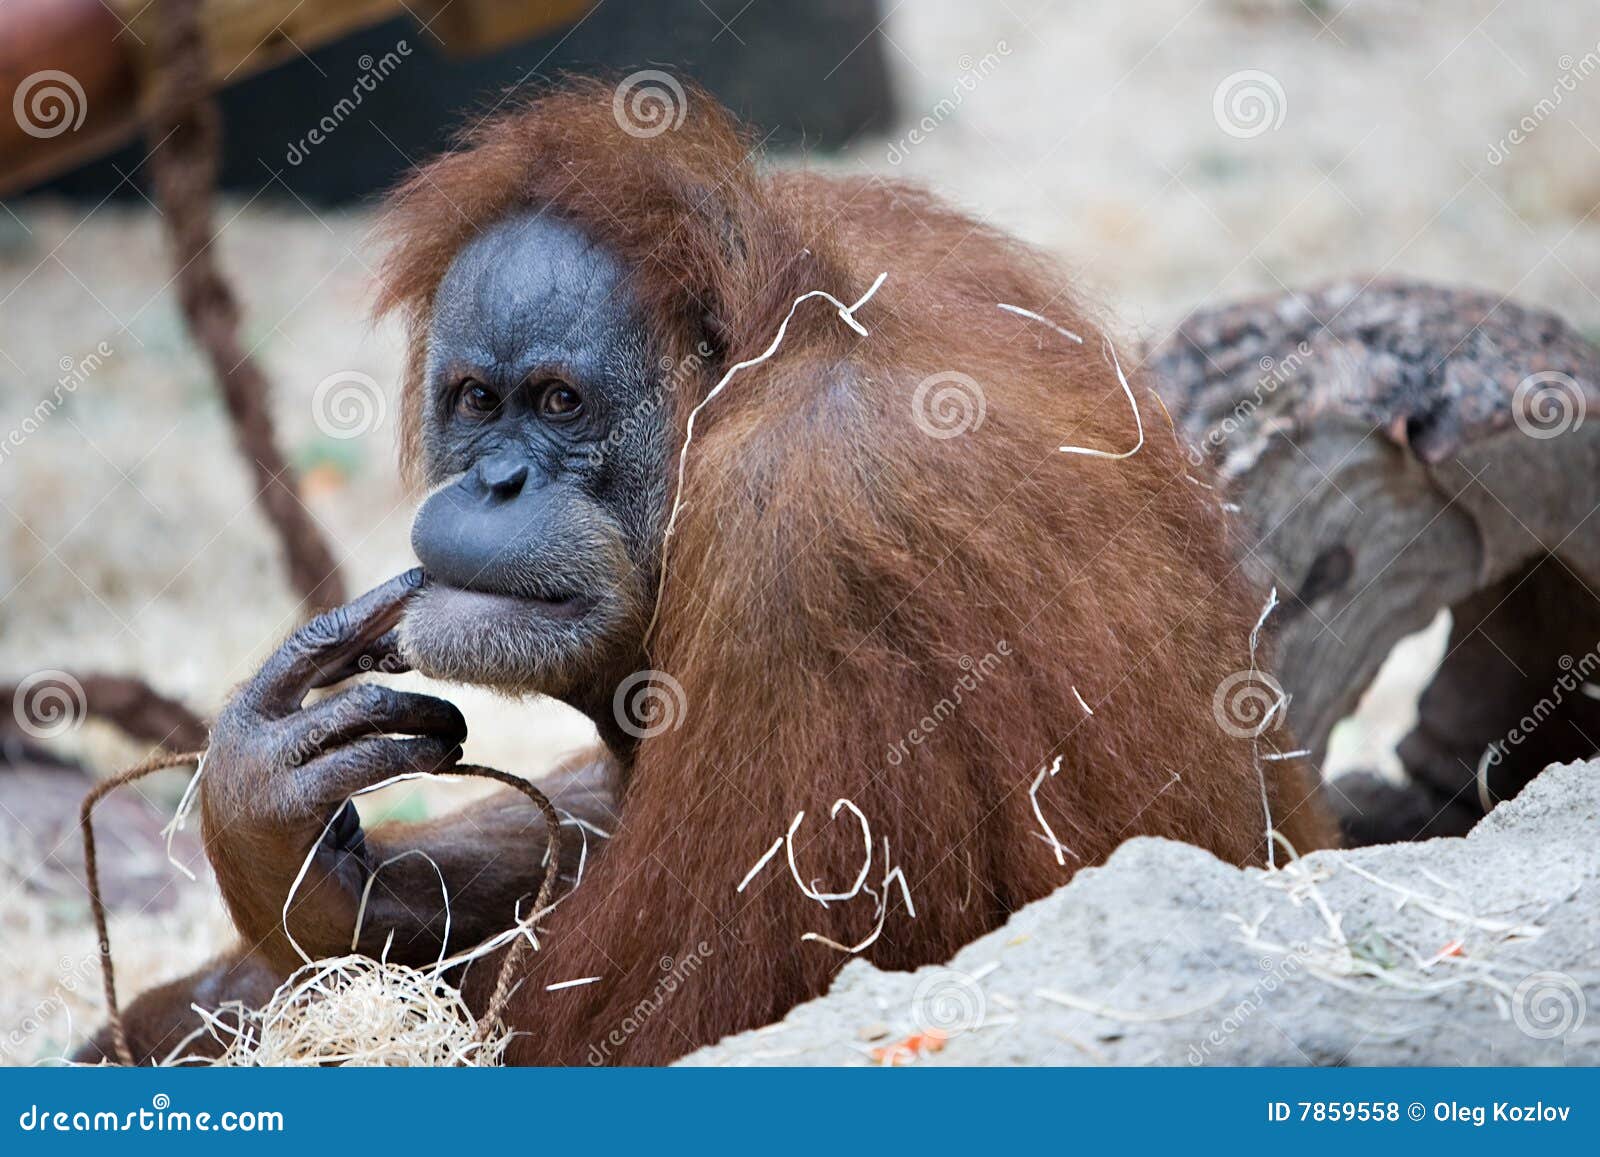  Gorilla monkey  stock photo Image of detail intelligence 